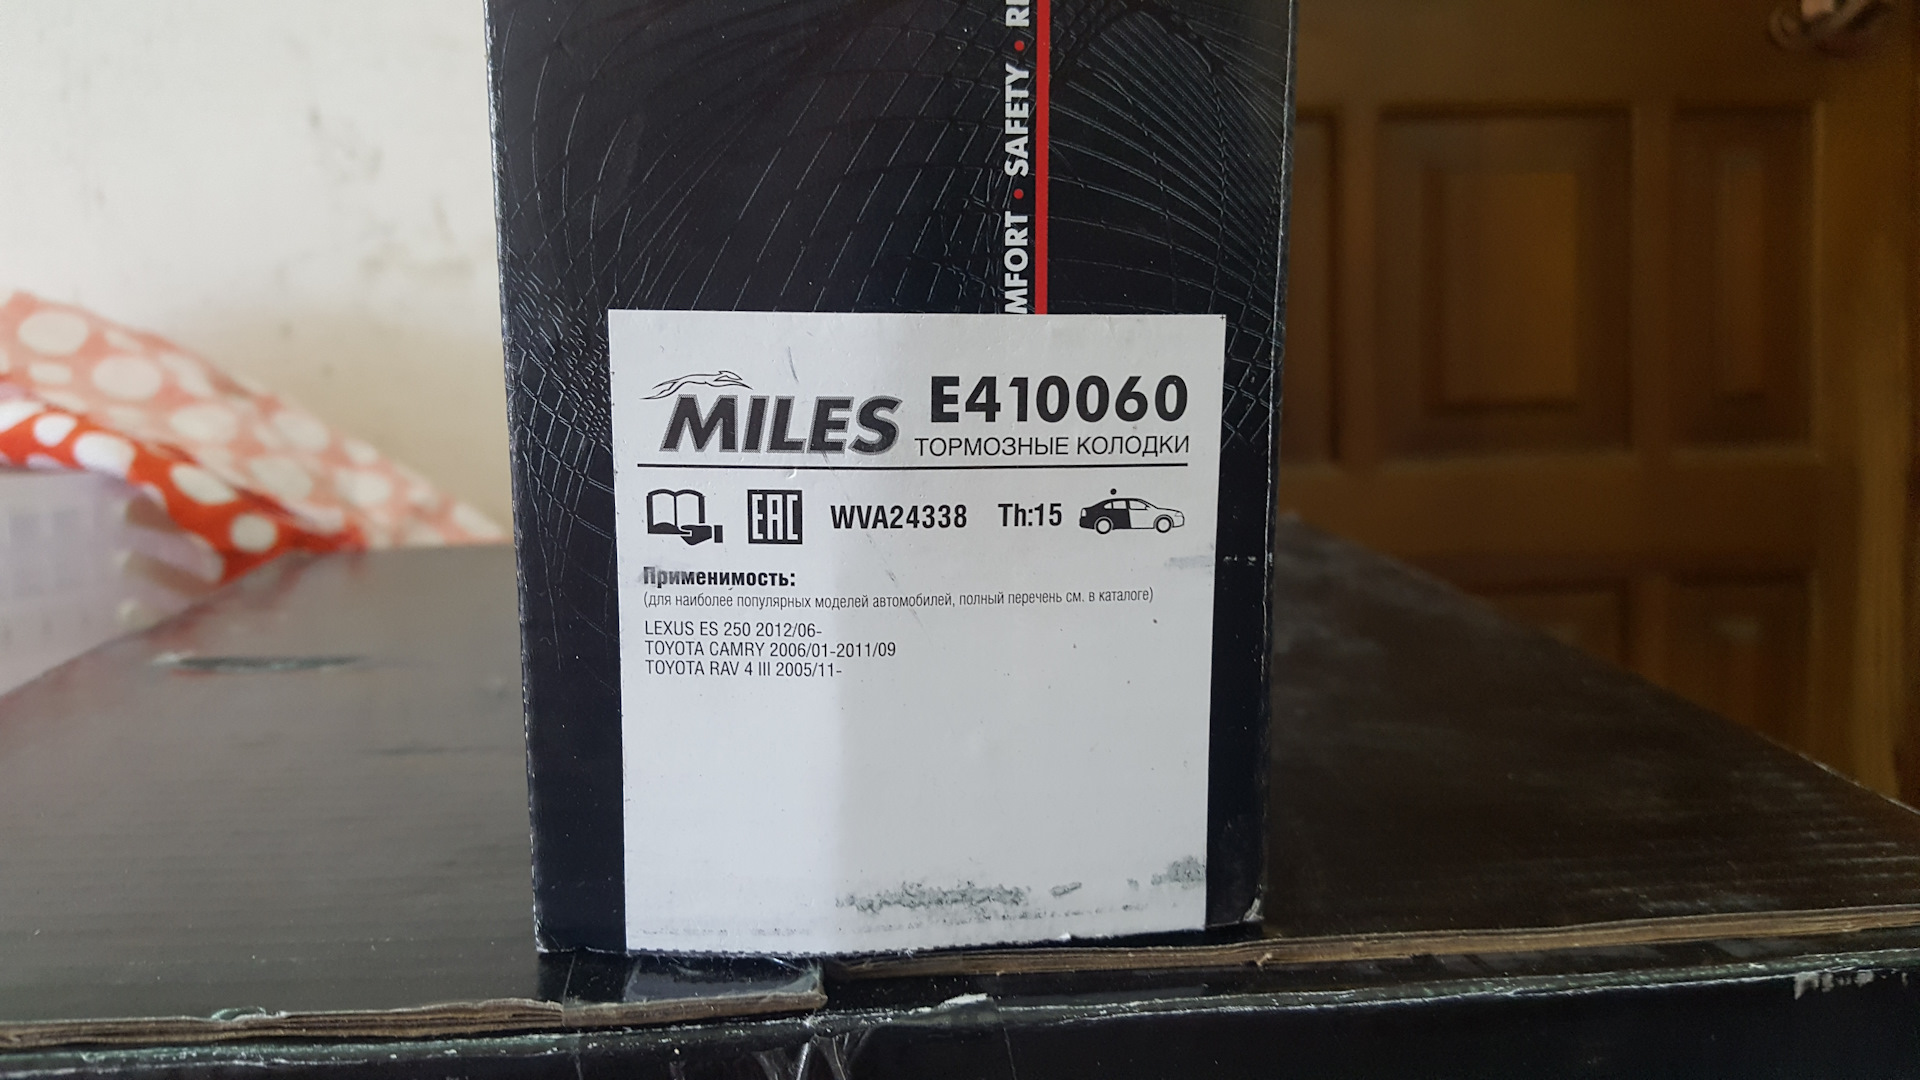 Производитель miles отзывы. Miles Pro e5 колодки. E410060. Miles e410060. Колодки Miles коробка.